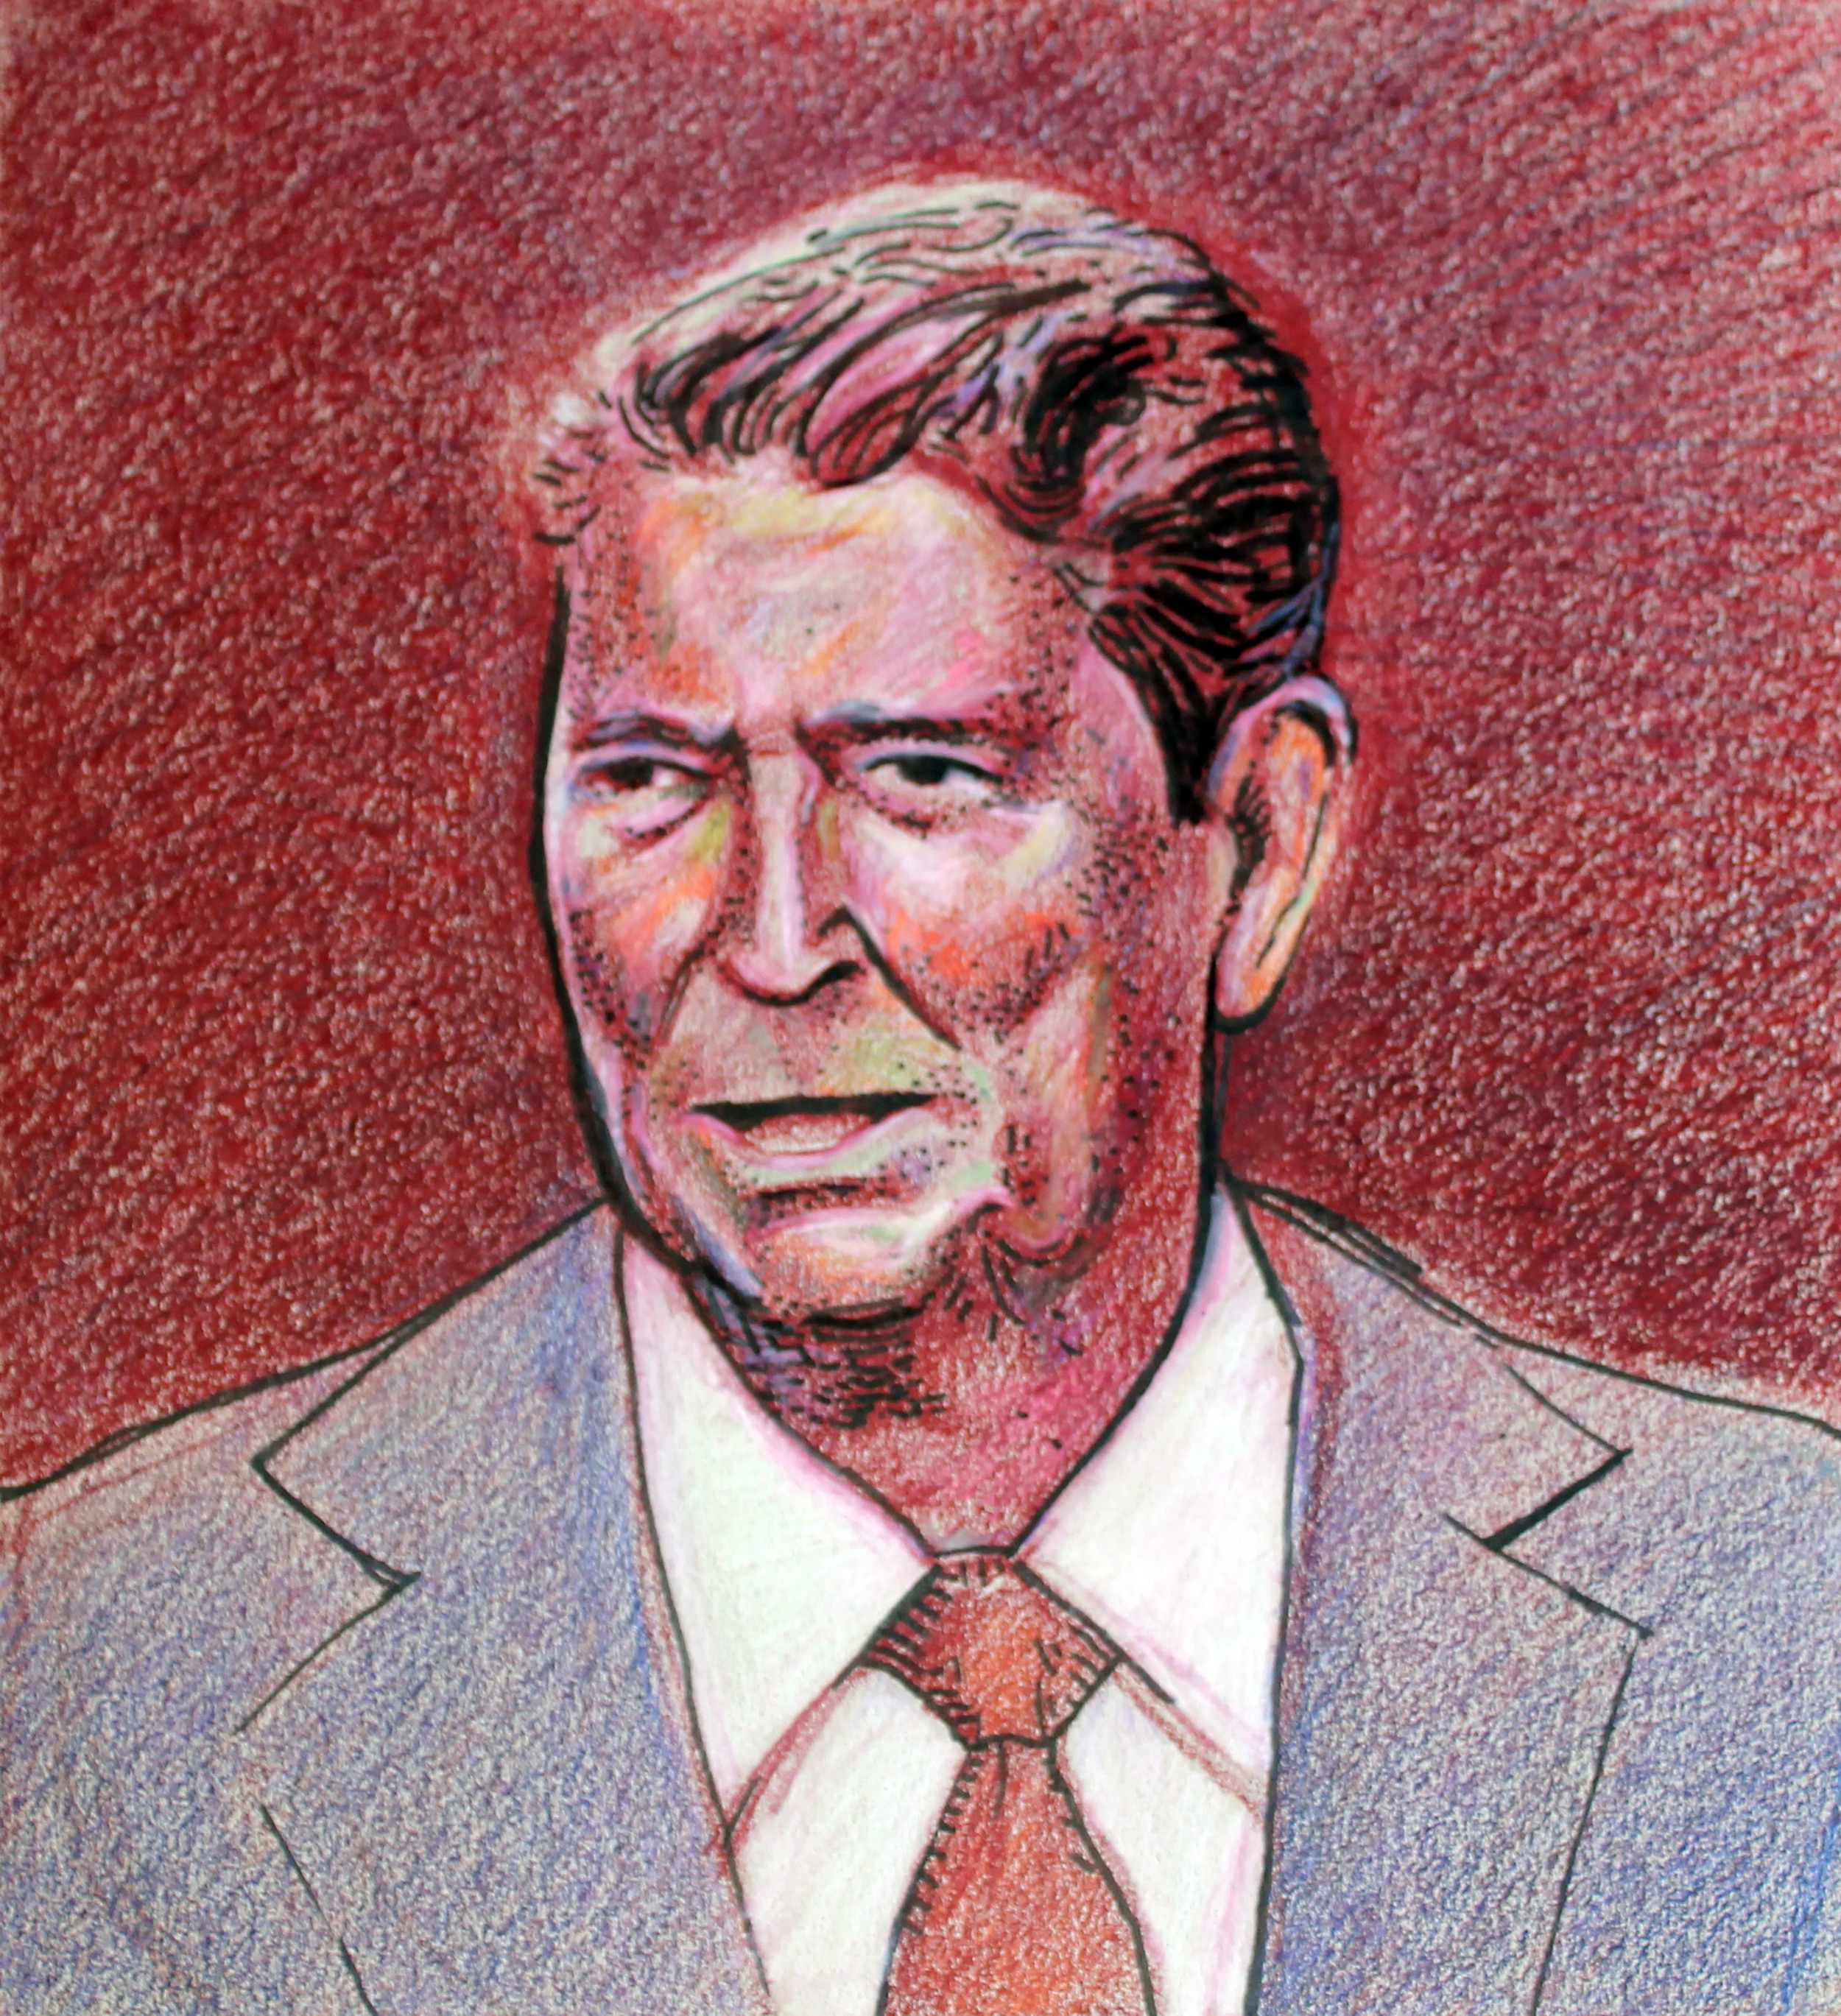 Ronald Reagan - War Criminal